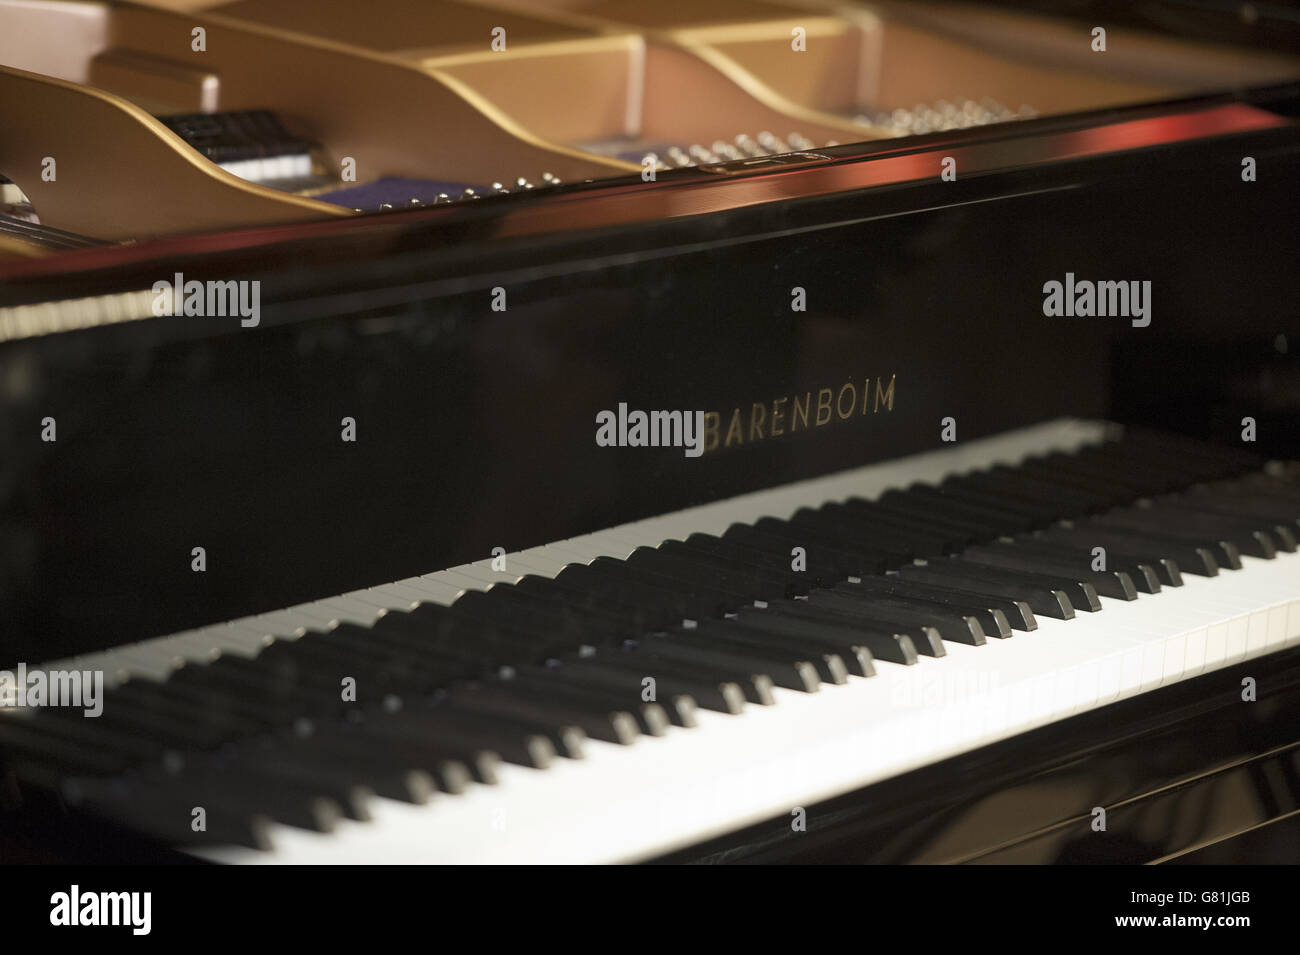 Le pianiste et chef d'orchestre Daniel Barenboim dévoile le piano Barenboim-Maene  concert Grand, développé et construit par le fabricant d'instruments belge  Chris Maene avec le soutien de Steinway & Sons, au Royal